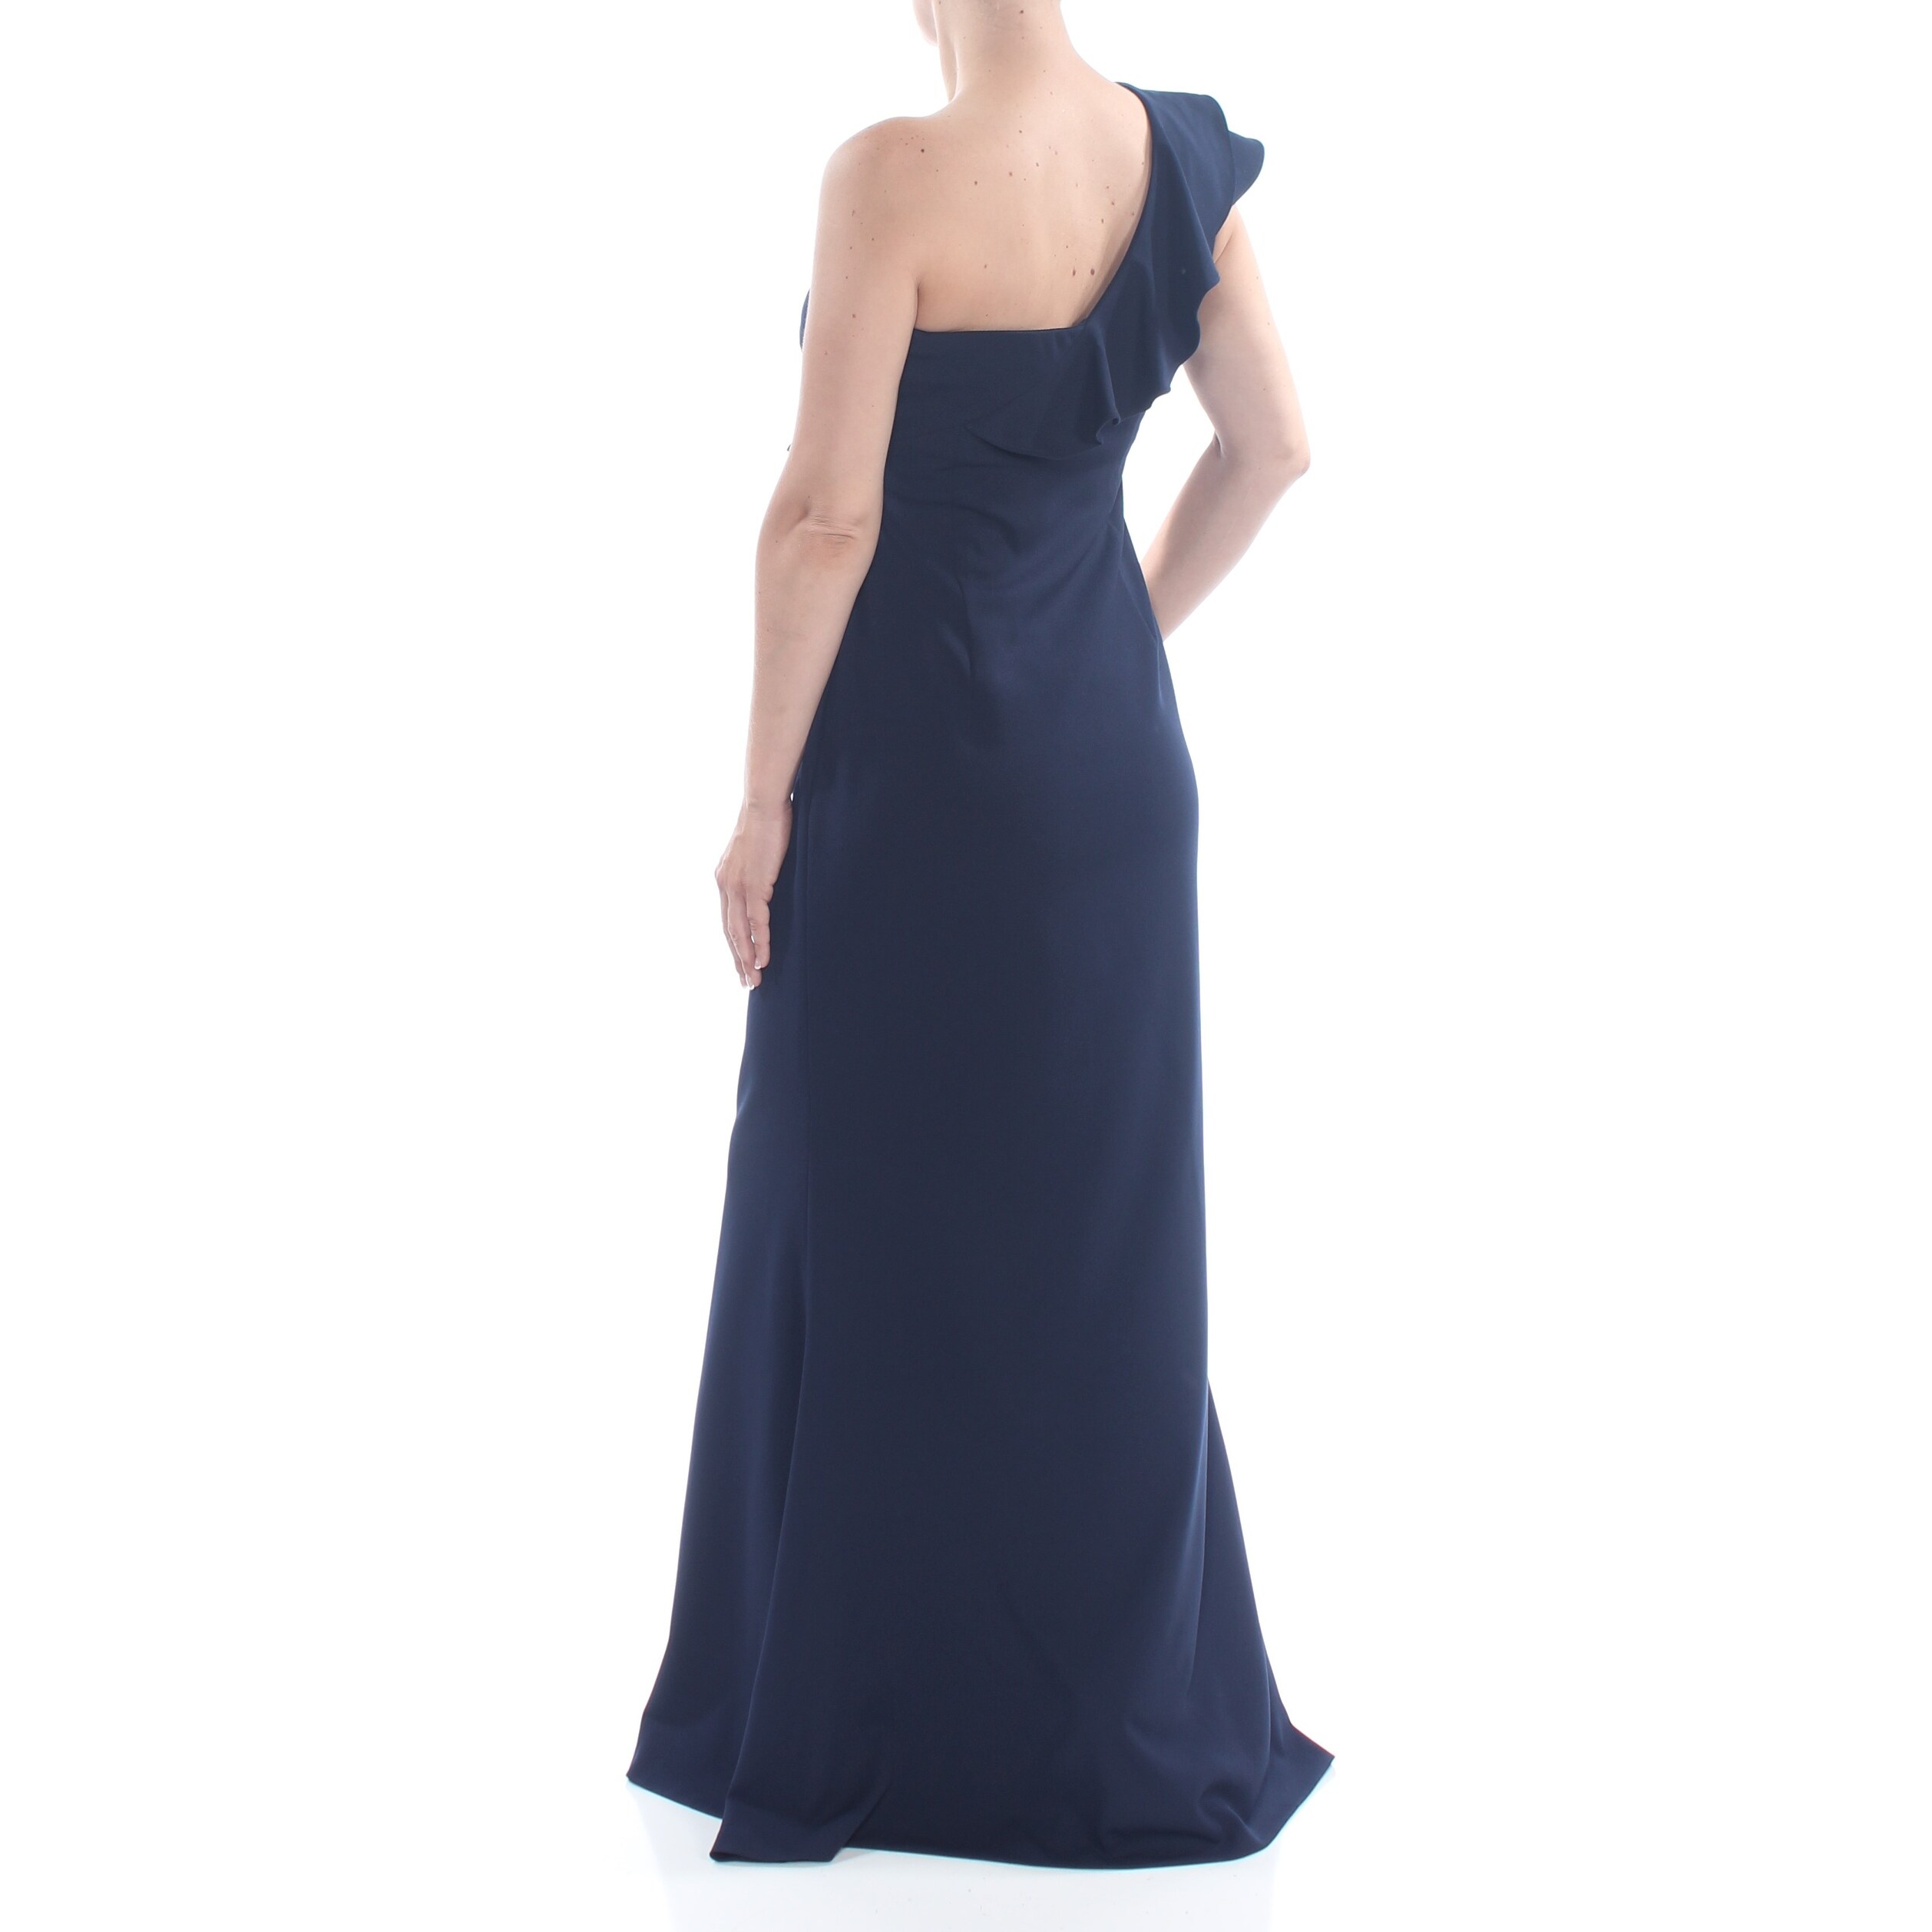 calvin klein navy blue long dress